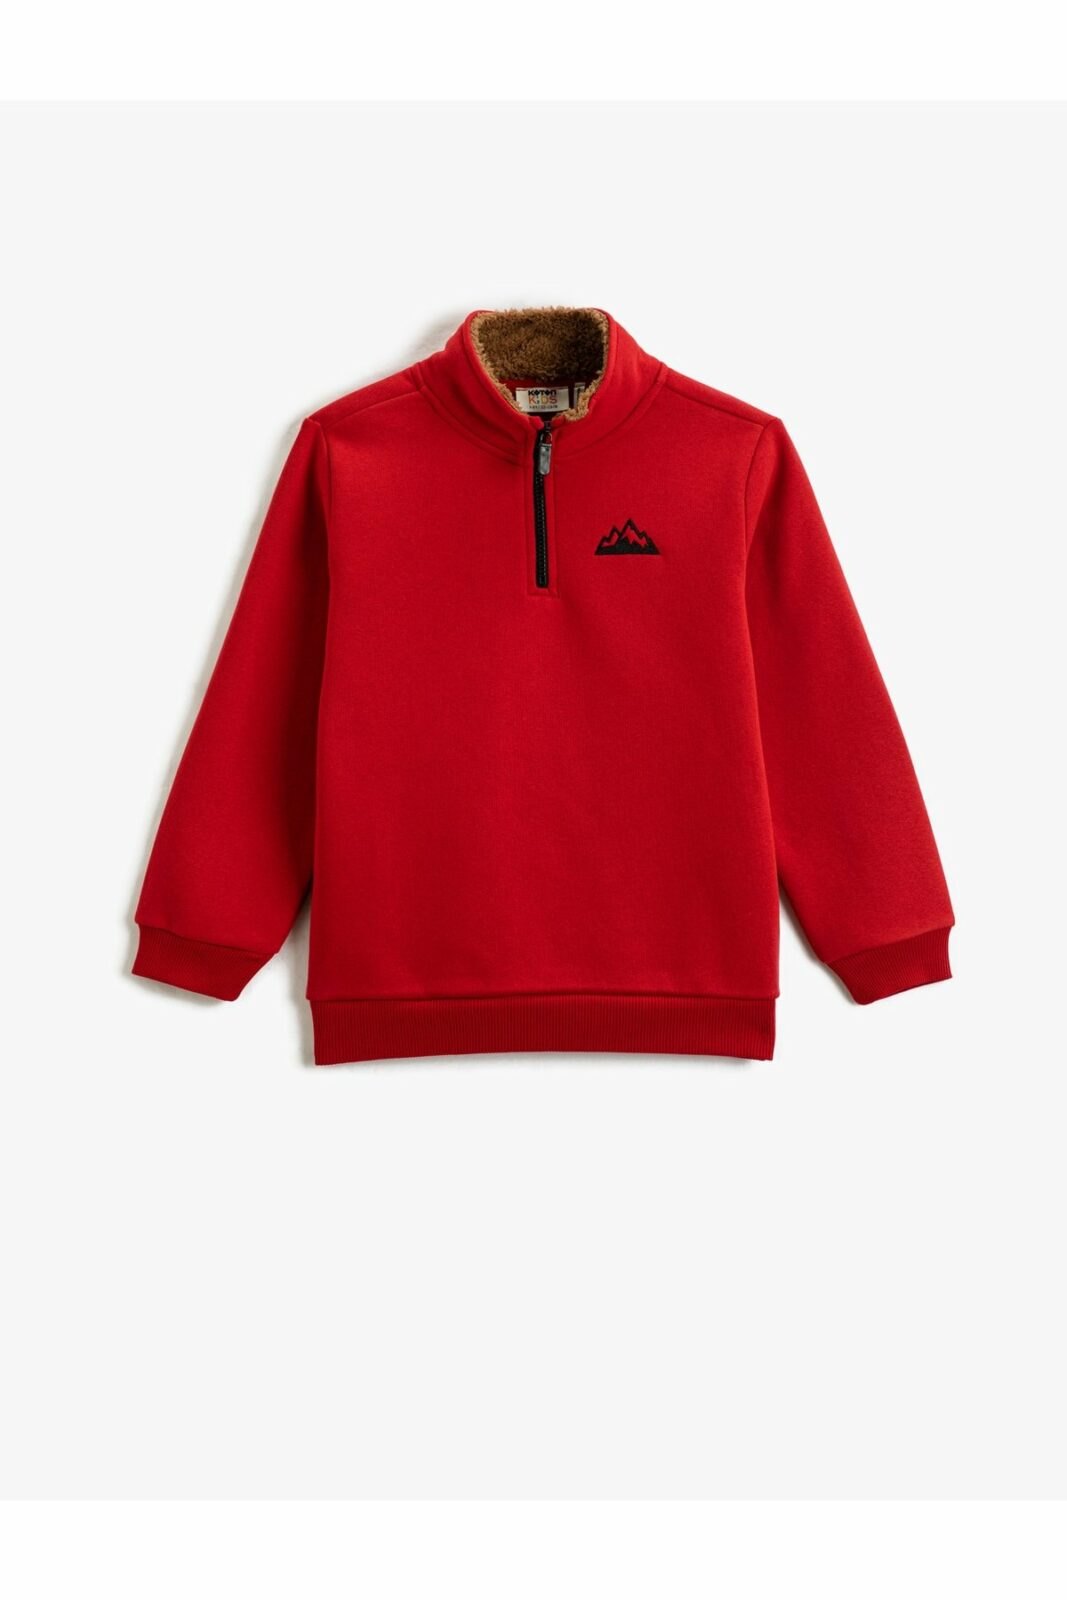 Koton Sweatshirt - Red -